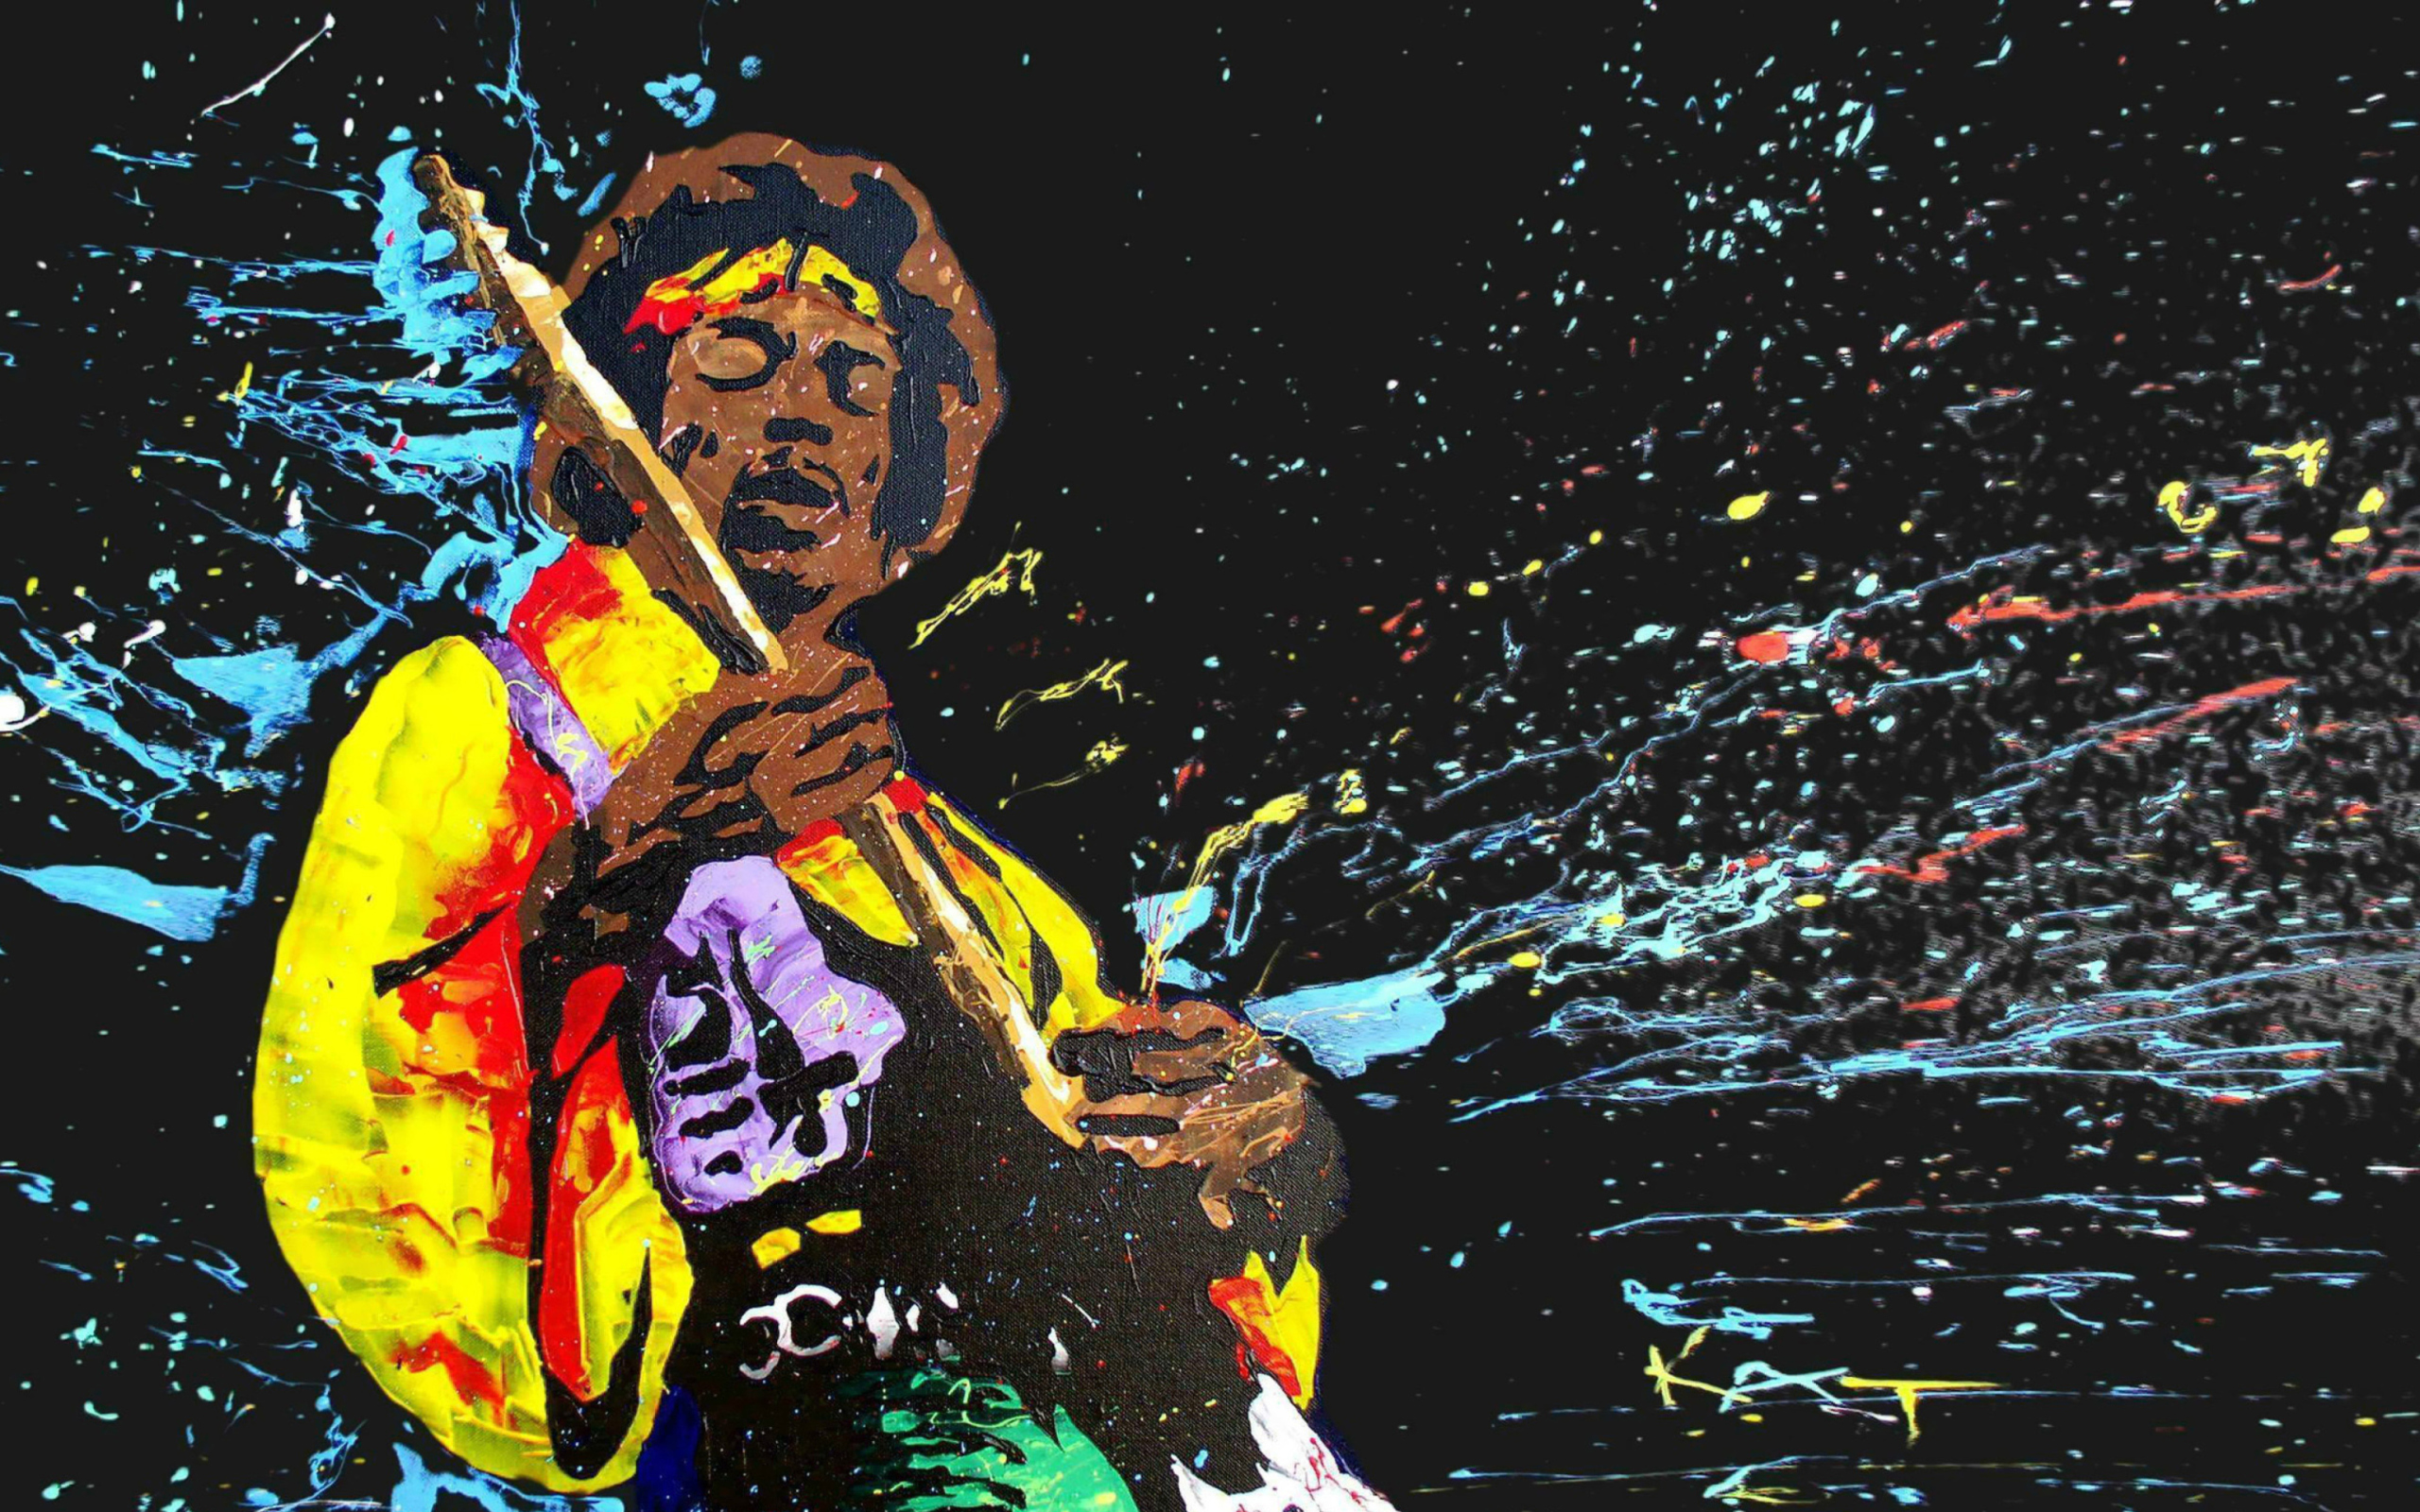 Jimi Hendrix Painting wallpaper 2560x1600